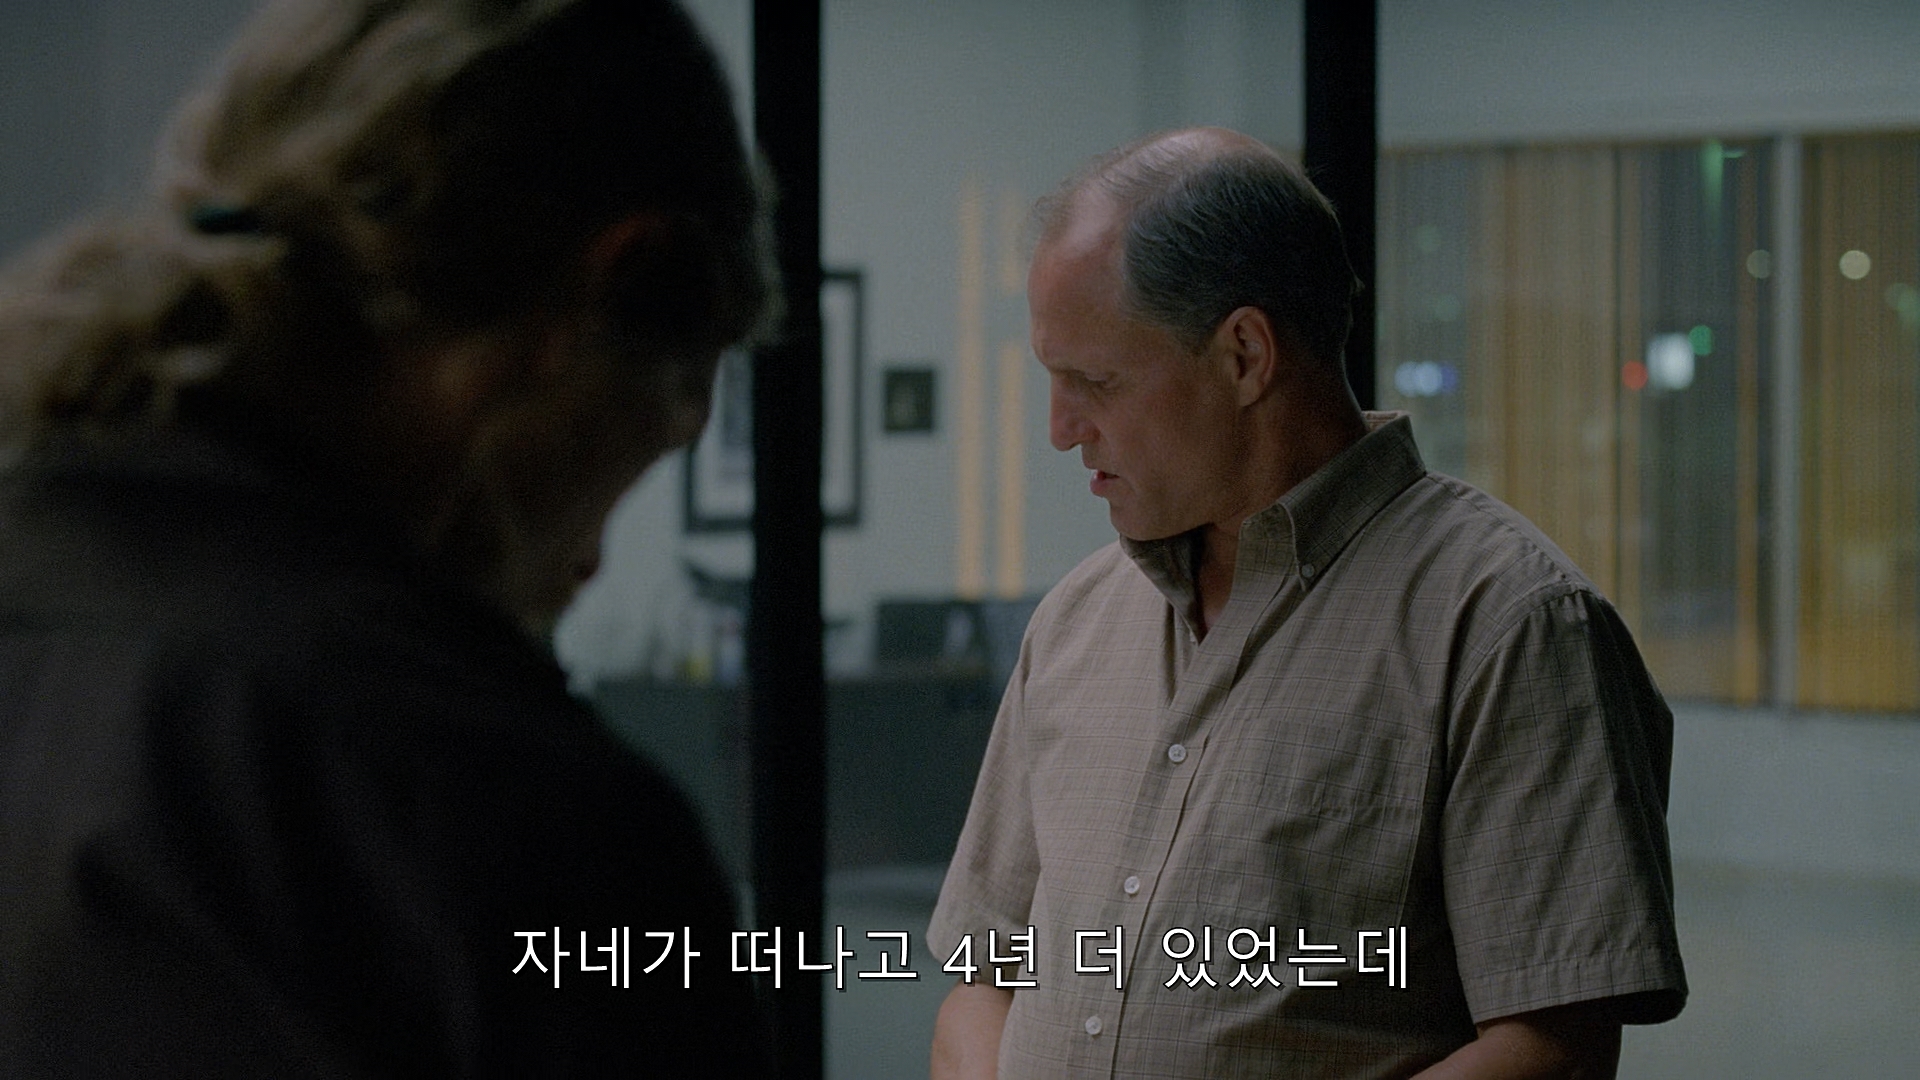 True Detective (2014) - S01E07 - After You've Gone (1080p BluRay x265 afm72).mkv_001640661.jpg